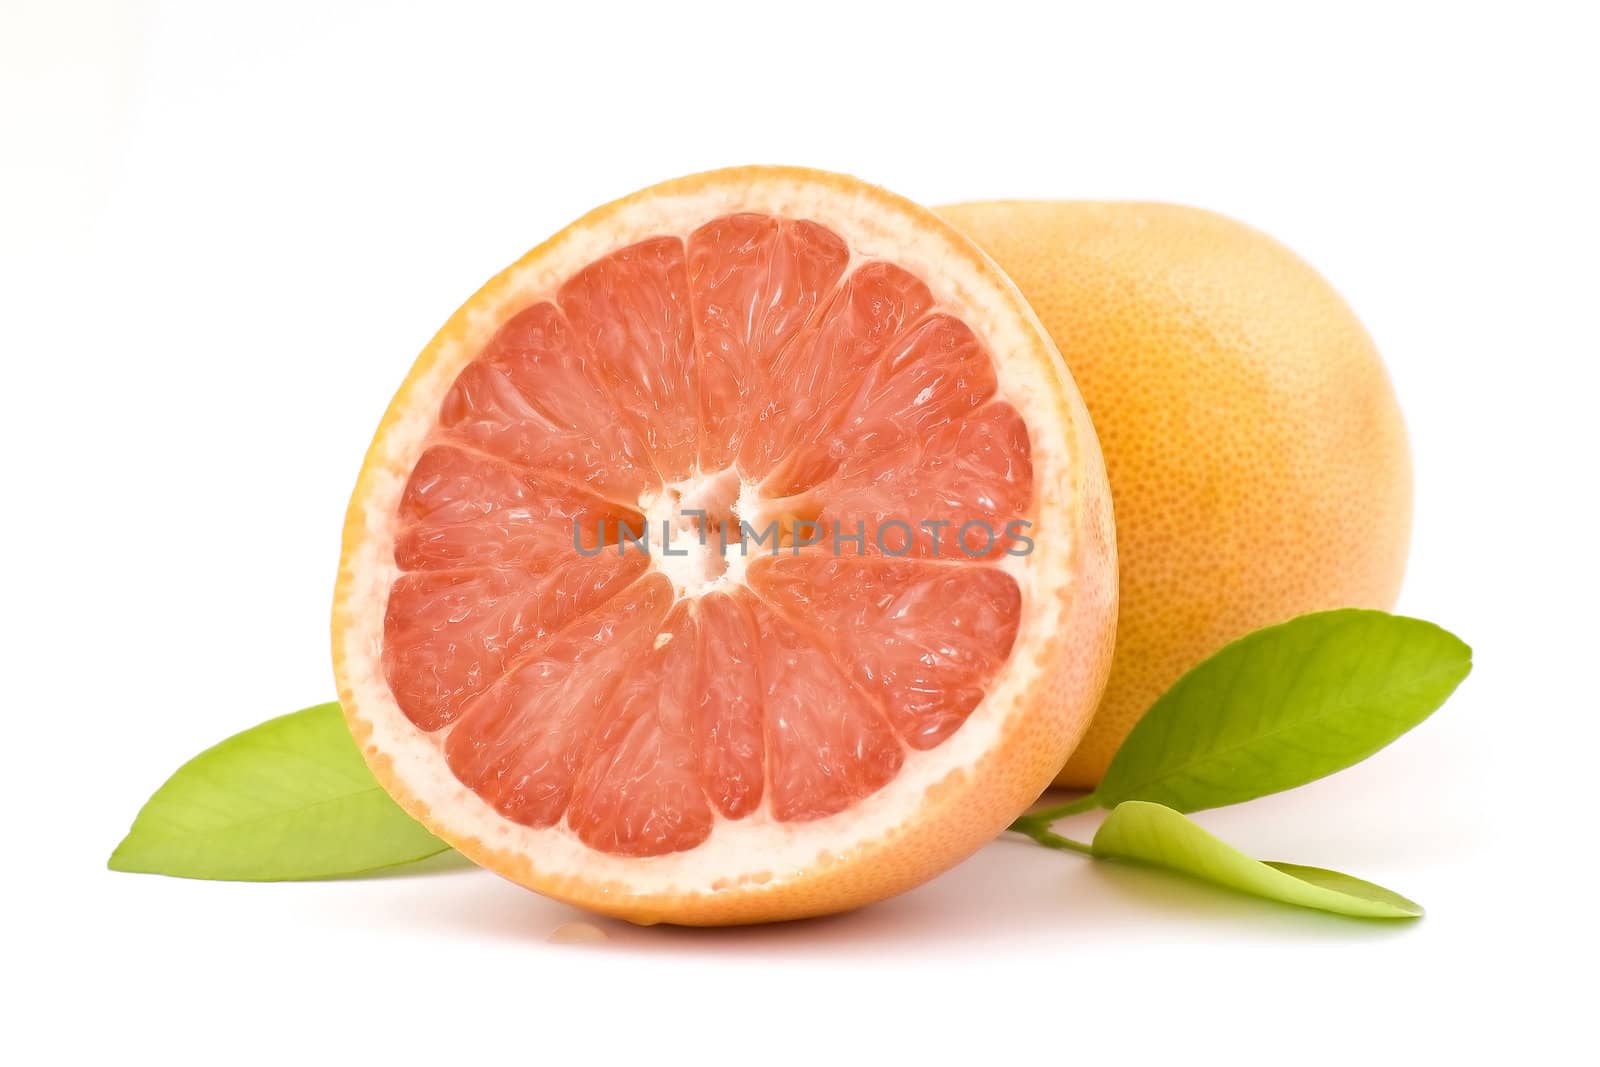 red grapefruit by miradrozdowski